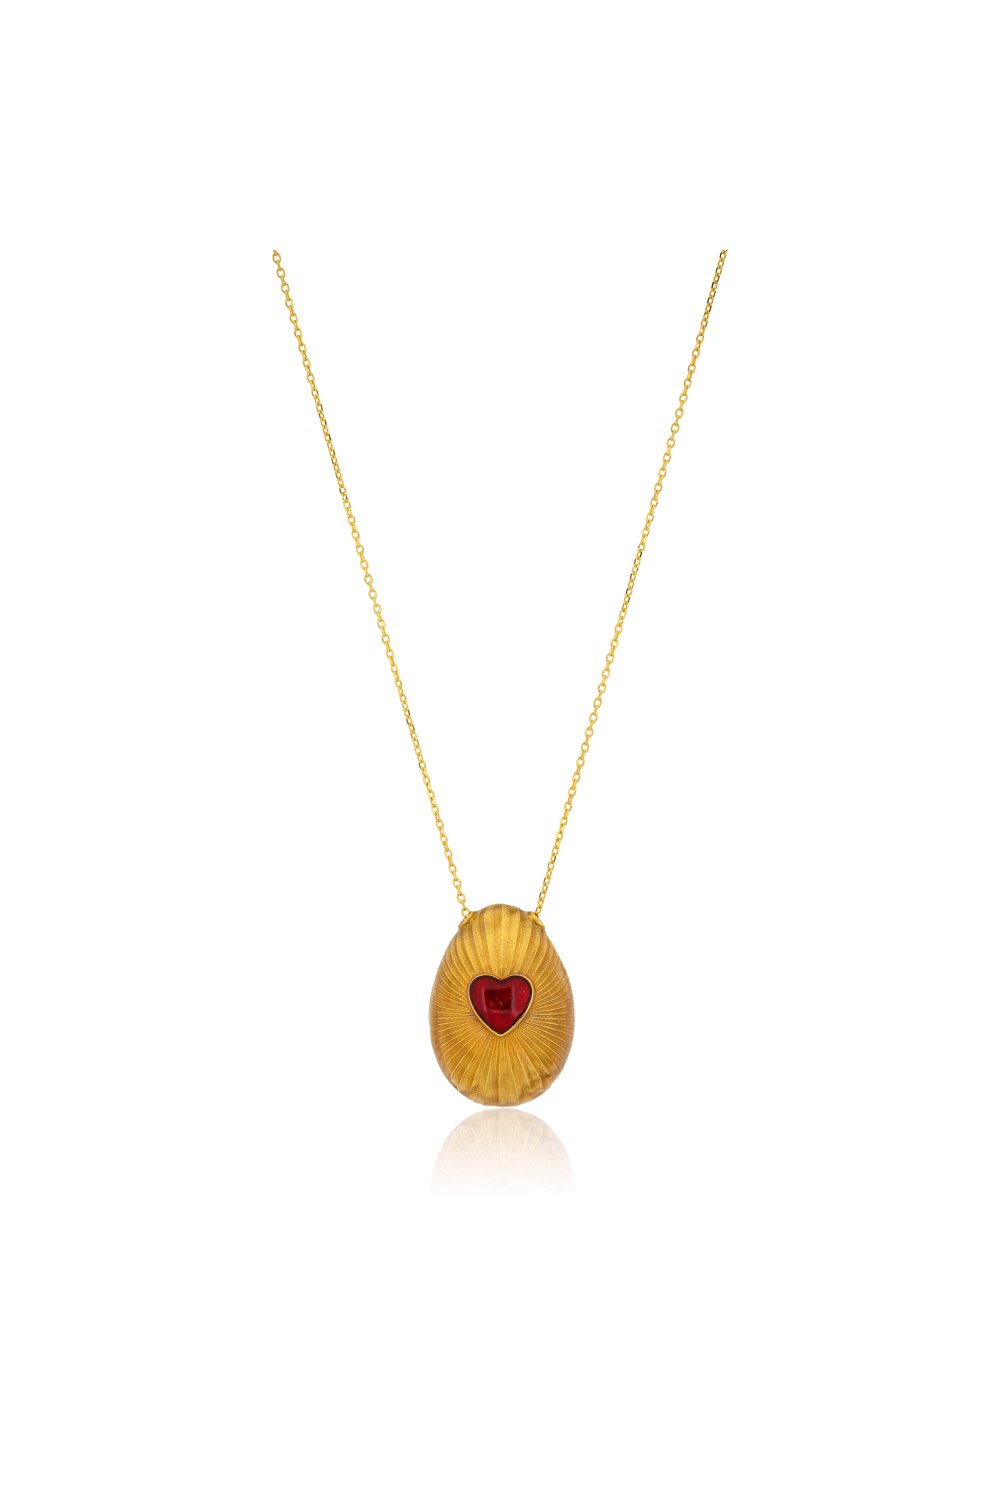 KESSARIS - Vivid Heart Golden Easter Egg Pendant Necklace